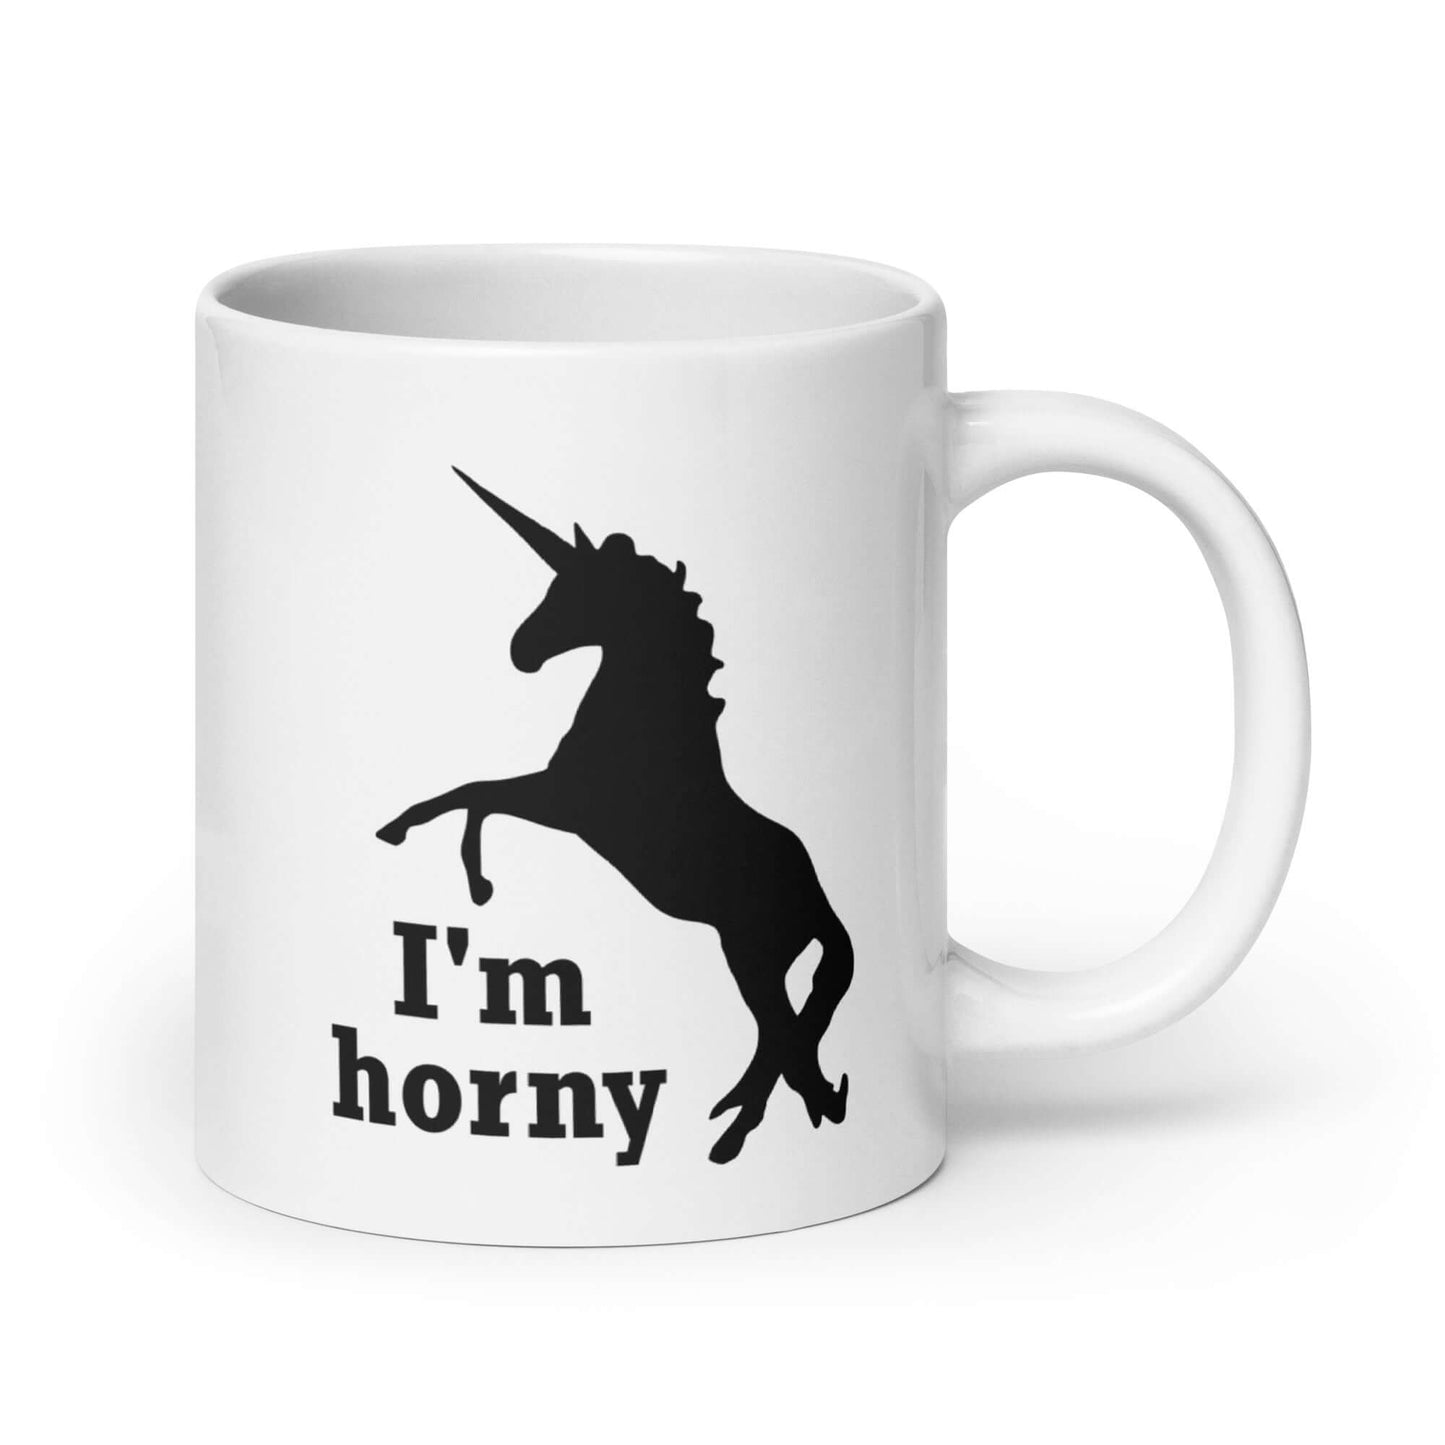 Funny I'm horny unicorn mug